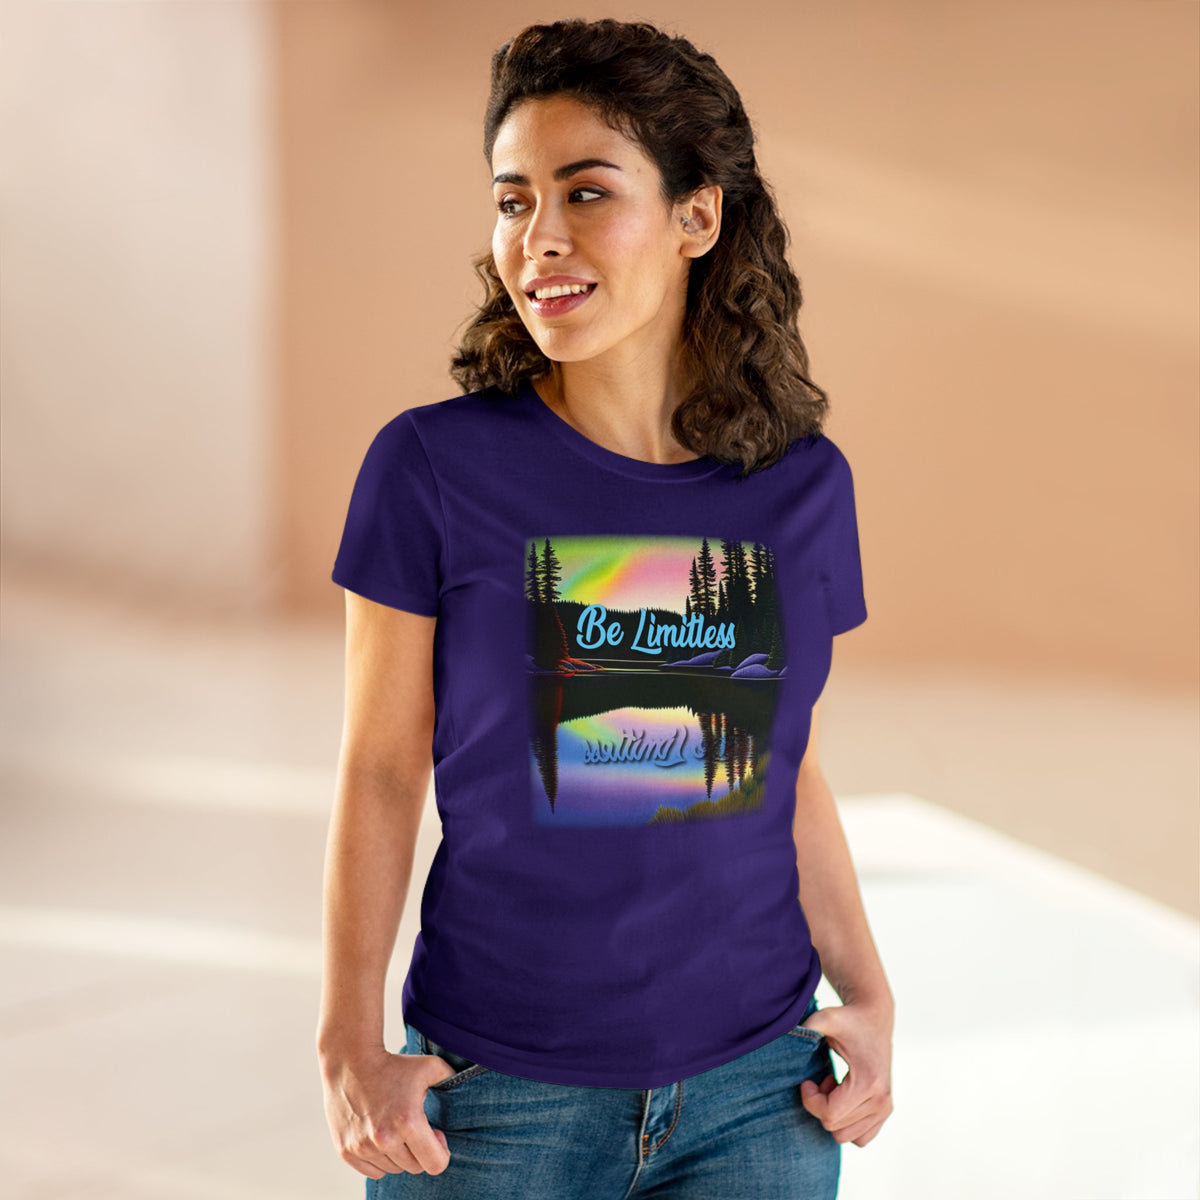 Women's Positive Reflection T-shirt - Inspirational T shirt -  Midweight Cotton Tee - WaterDragon Apparel